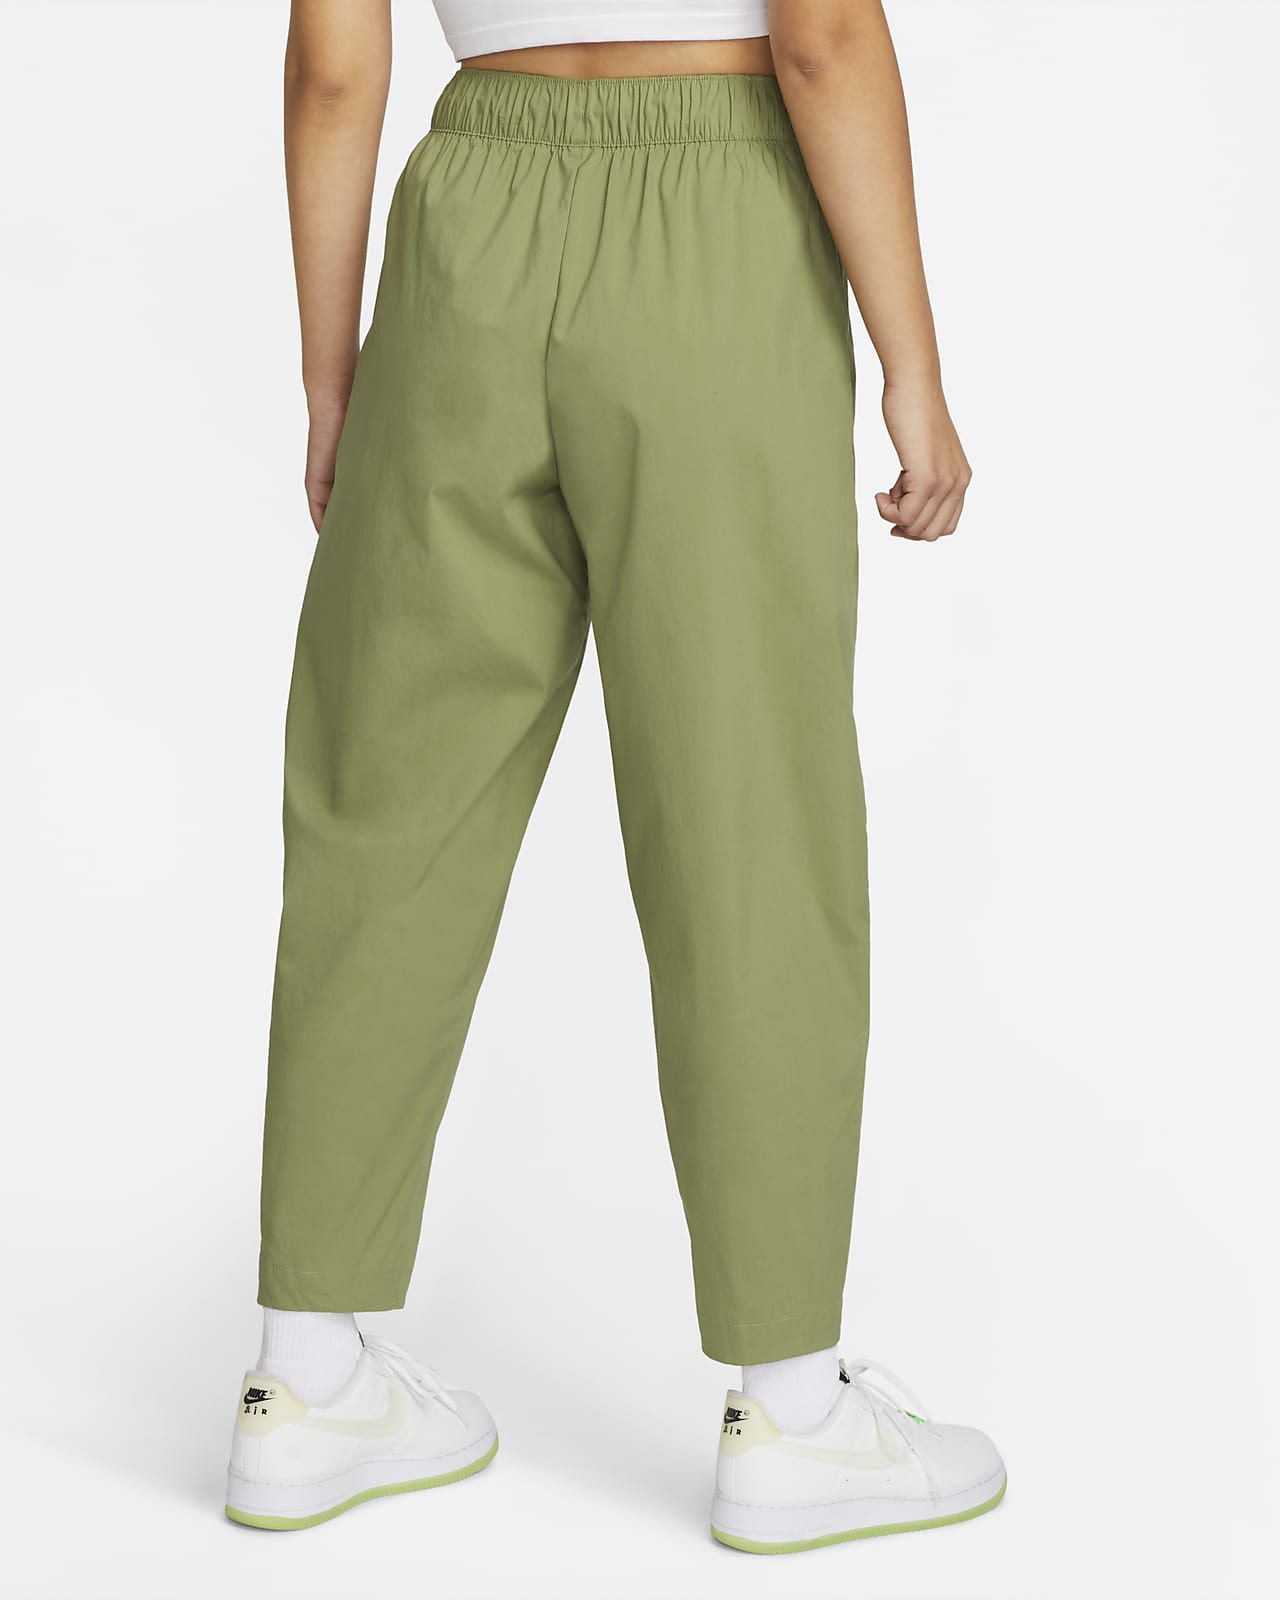 Pants con curvas de alto para mujer Sportswear Essential. Nike.com